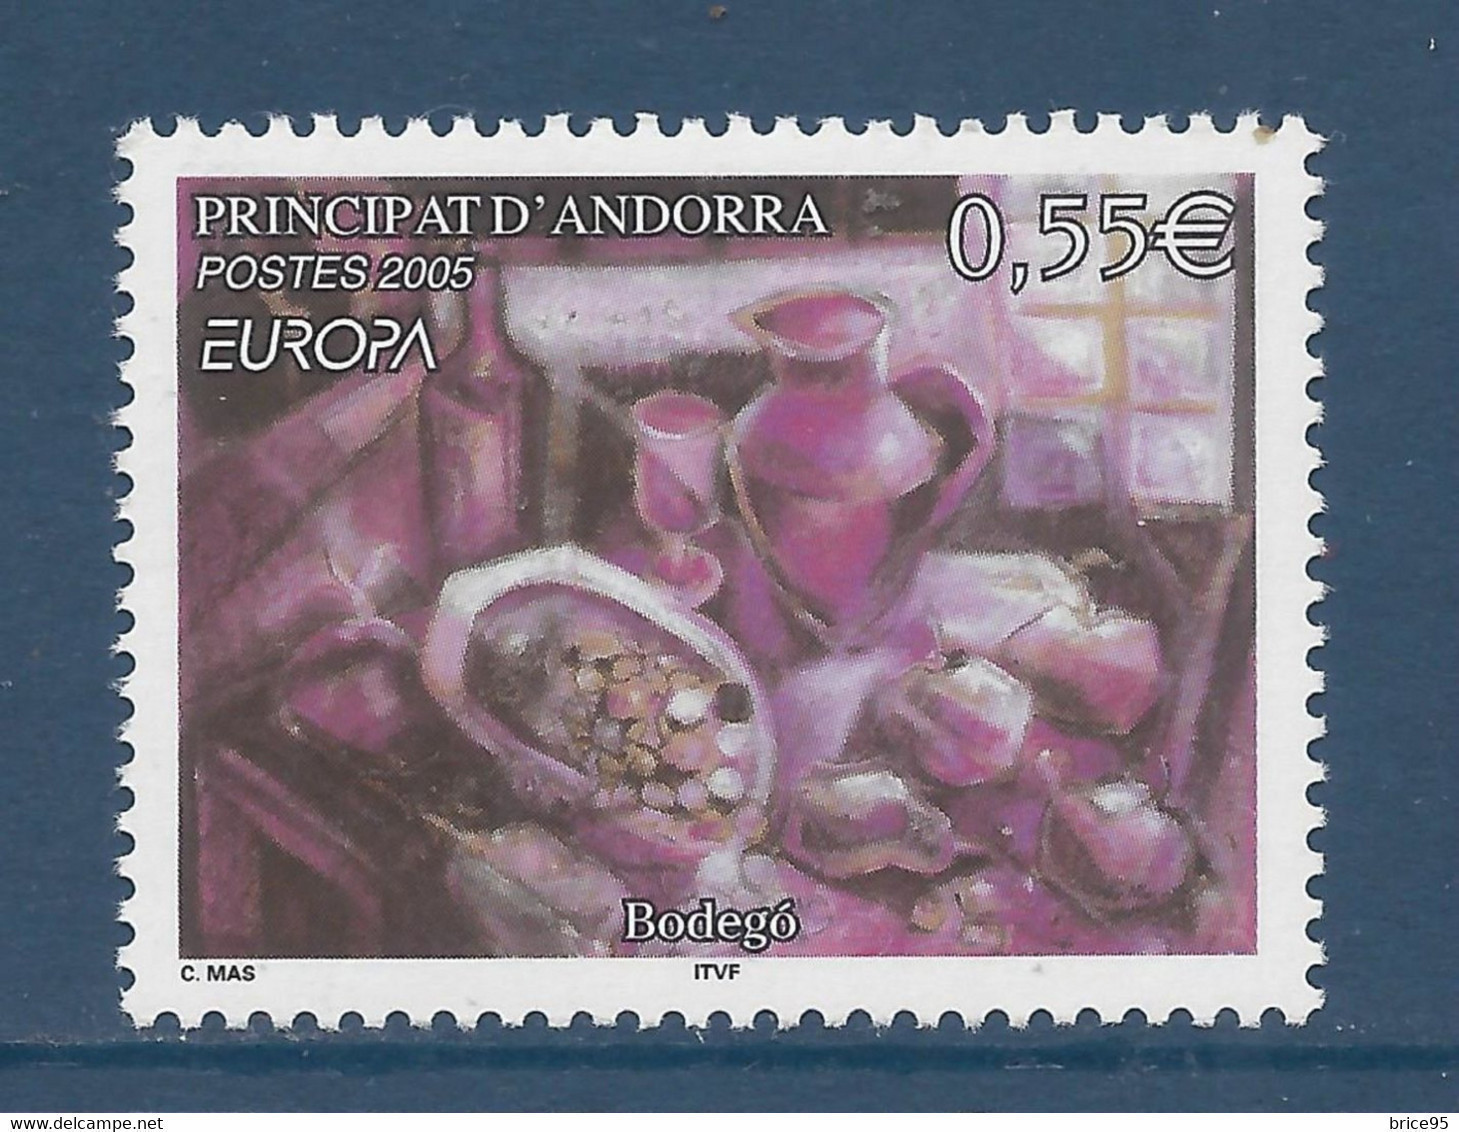 Andorre Français - YT N° 608 ** - Neuf Sans Charnière - 2005 - Unused Stamps